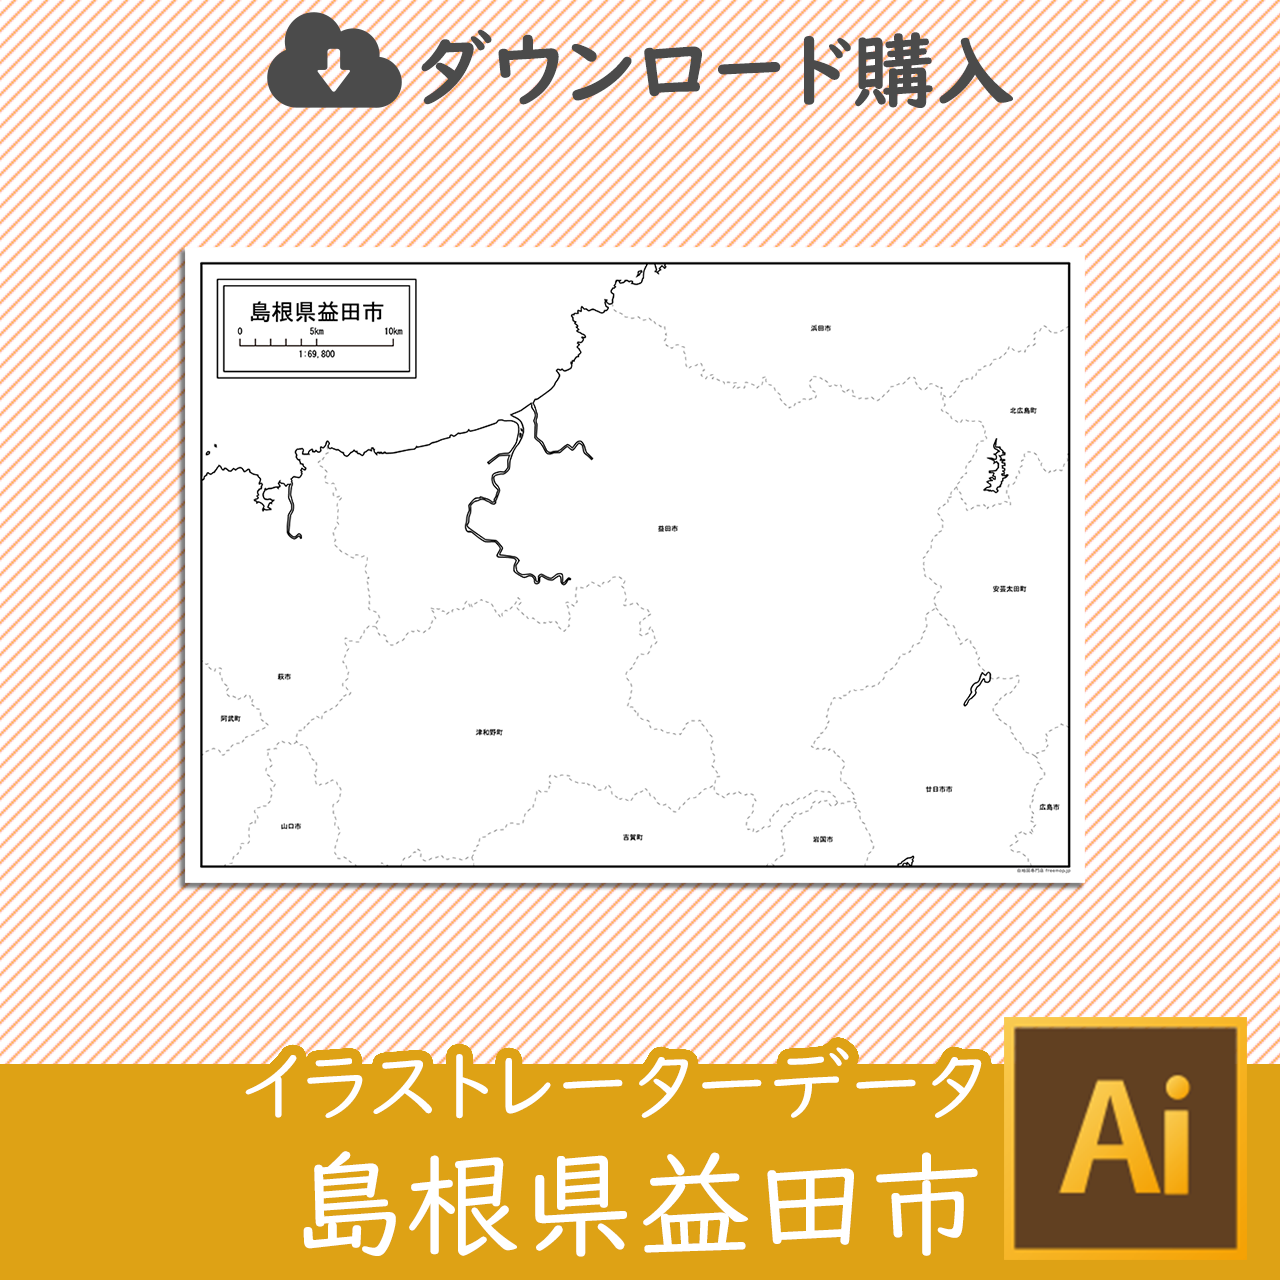 益田市の白地図のサムネイル